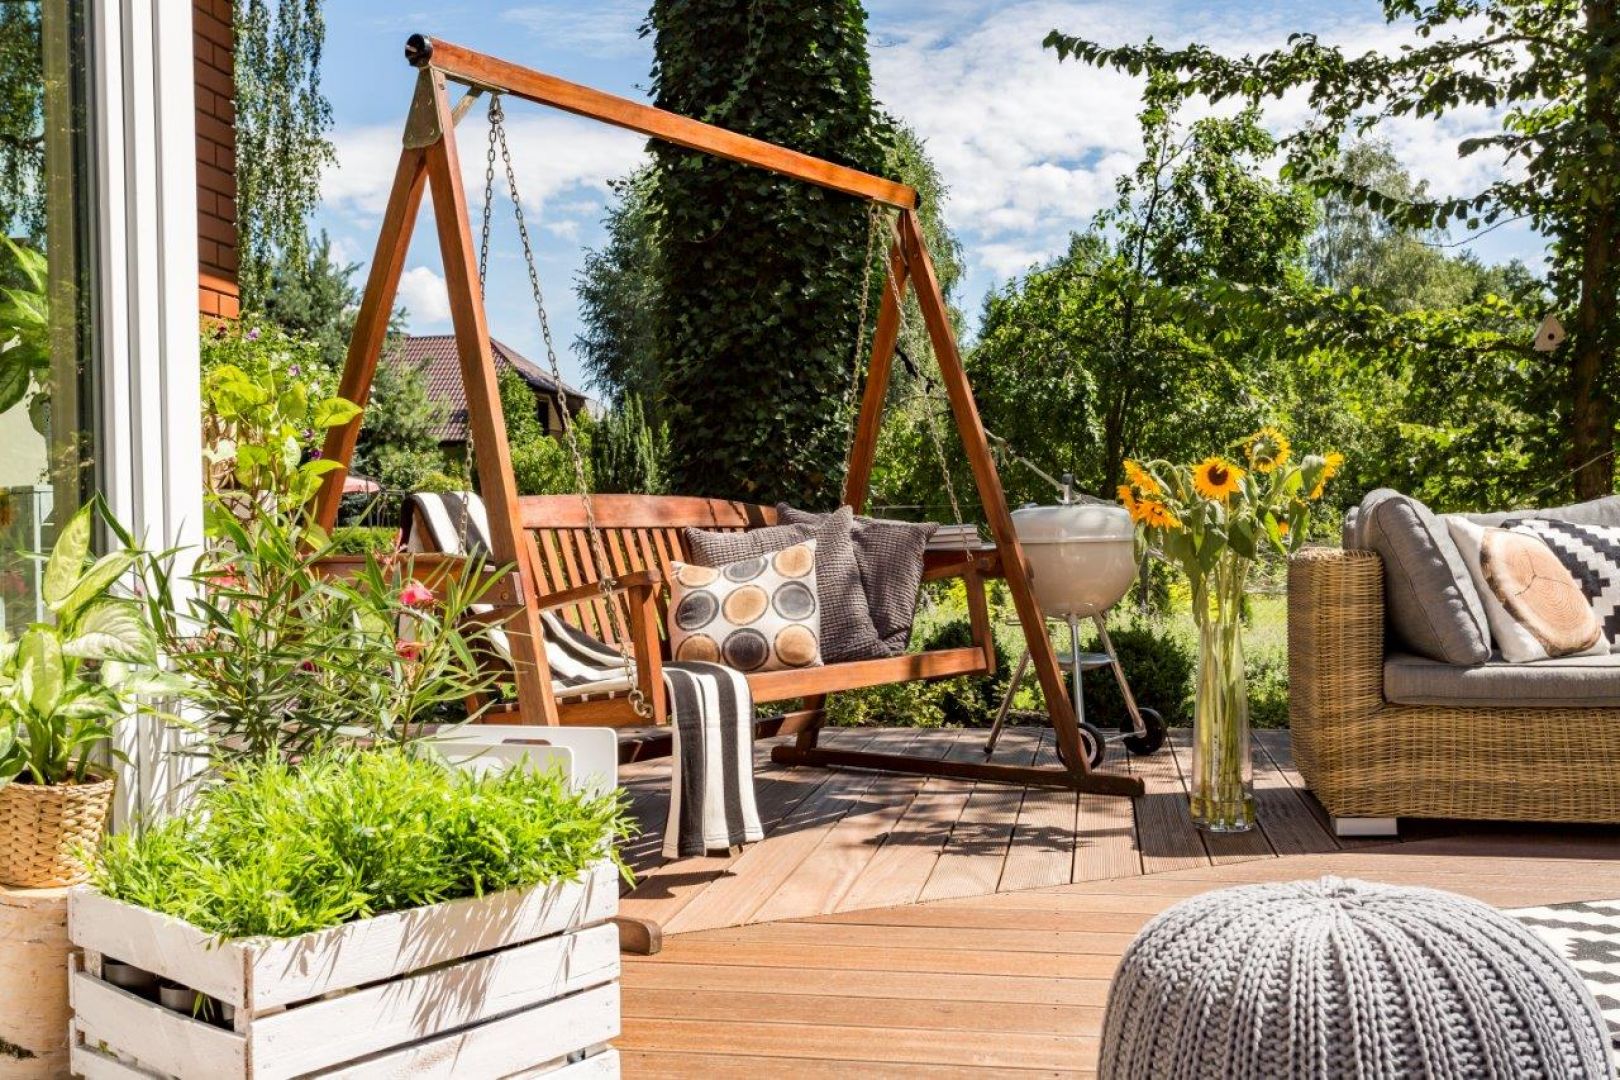 Jeśli lubisz spędzać wieczory na świeżym powietrzu, wybierz drewnianą huśtawkę ogrodową. Fot. mat. prasowe LuxDecor